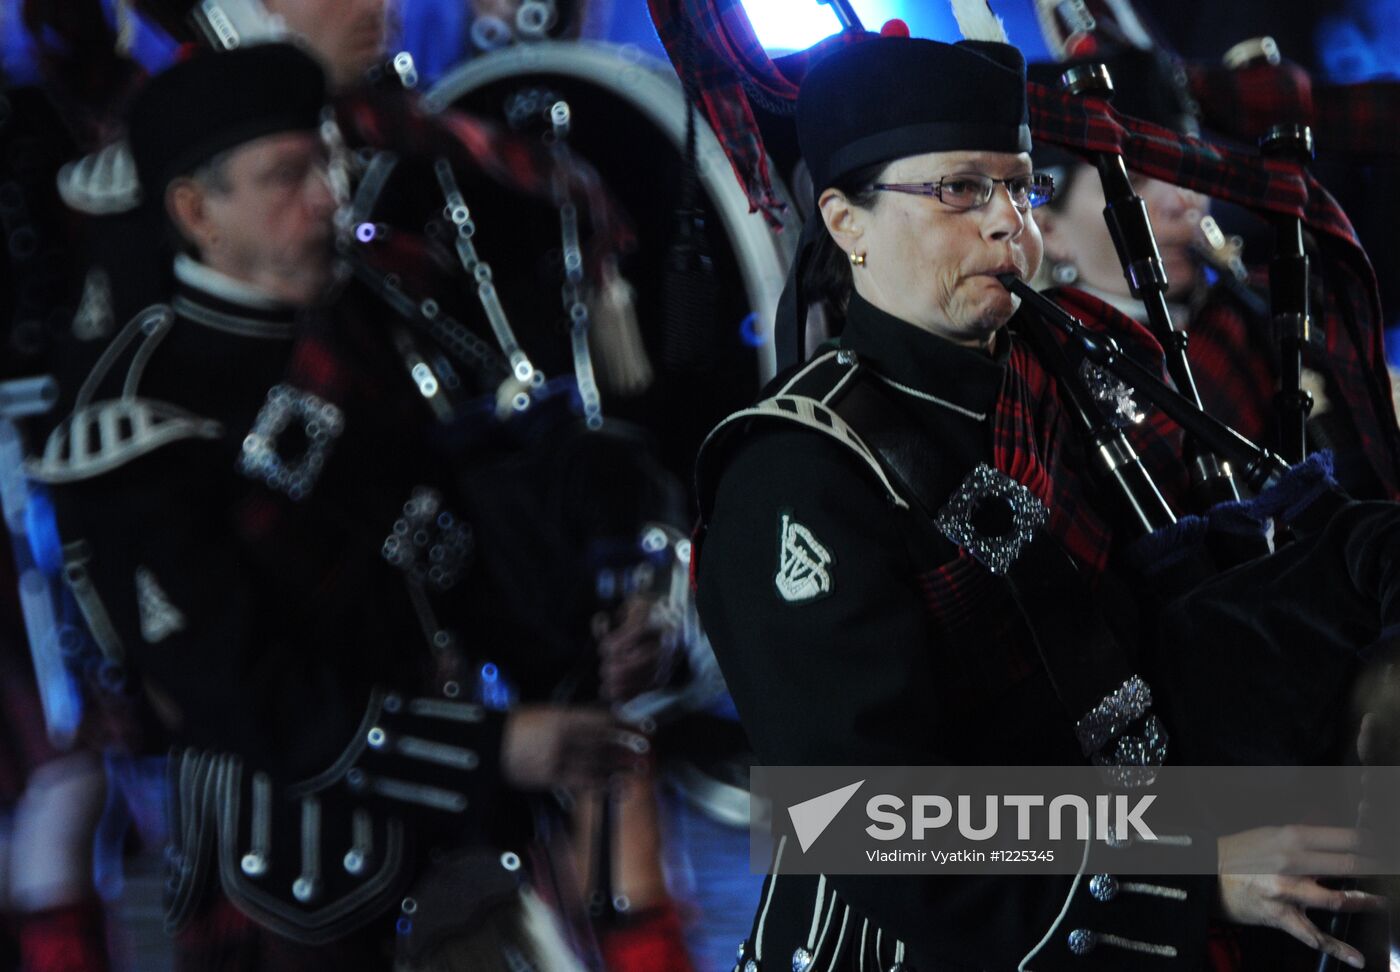 Opening ceremony of Spasskaya Tower 2012 festival